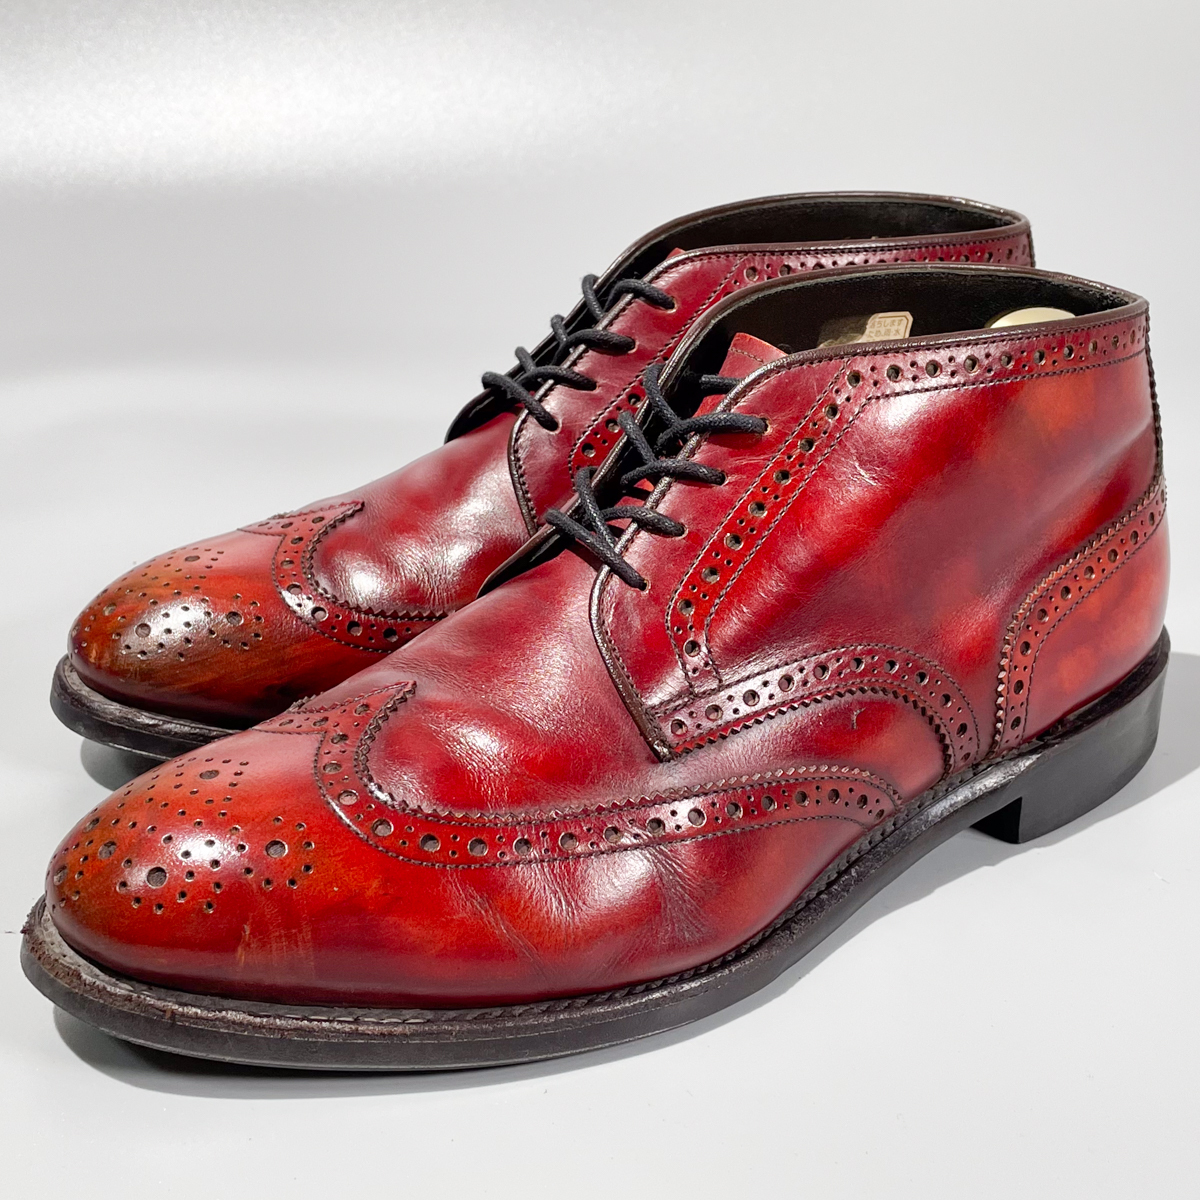 即決 REGAL リーガル ショートブーツ ウイングチップ ハイカット バーガンディ 赤茶色 メンズ 本革 革靴 25.5cm ビジネスシューズ A1892_画像1